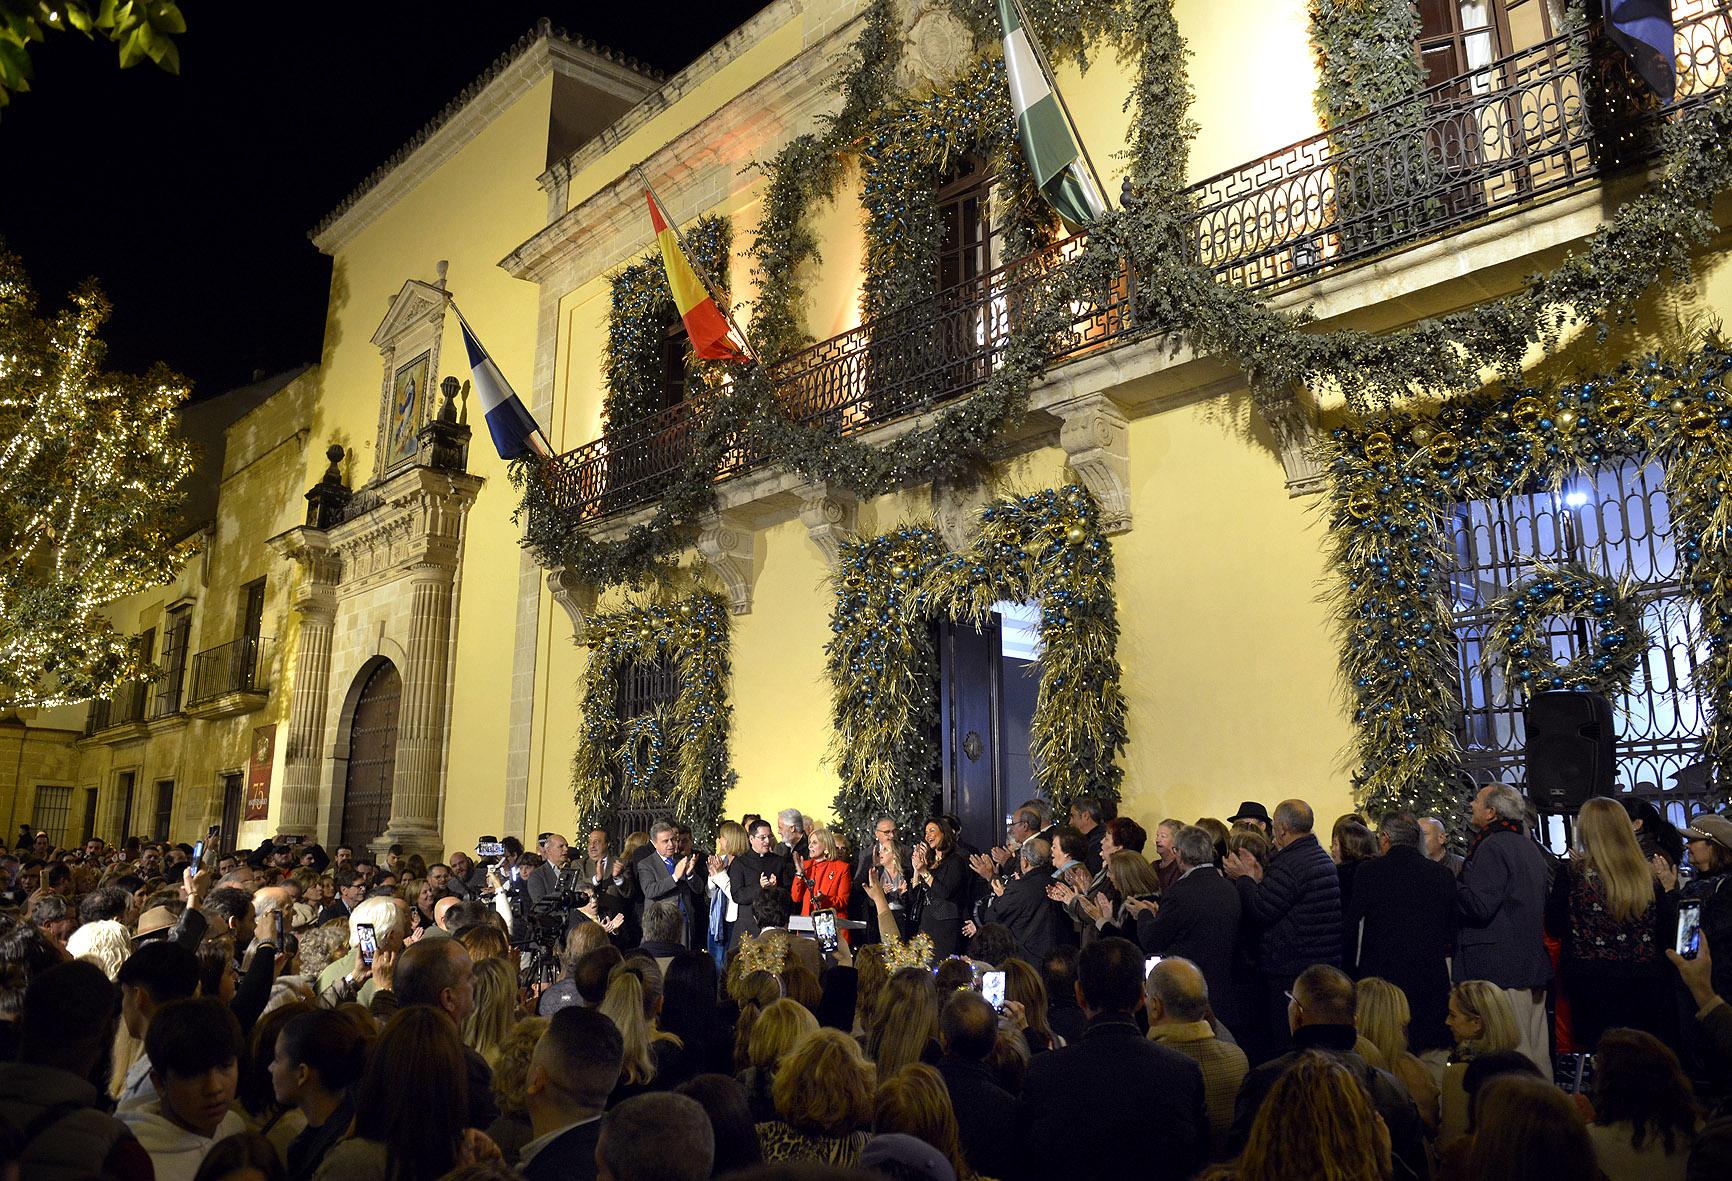 Inaugurados el belén, la decoración y el alumbrado de la fachada del Ayuntamiento de Jerez